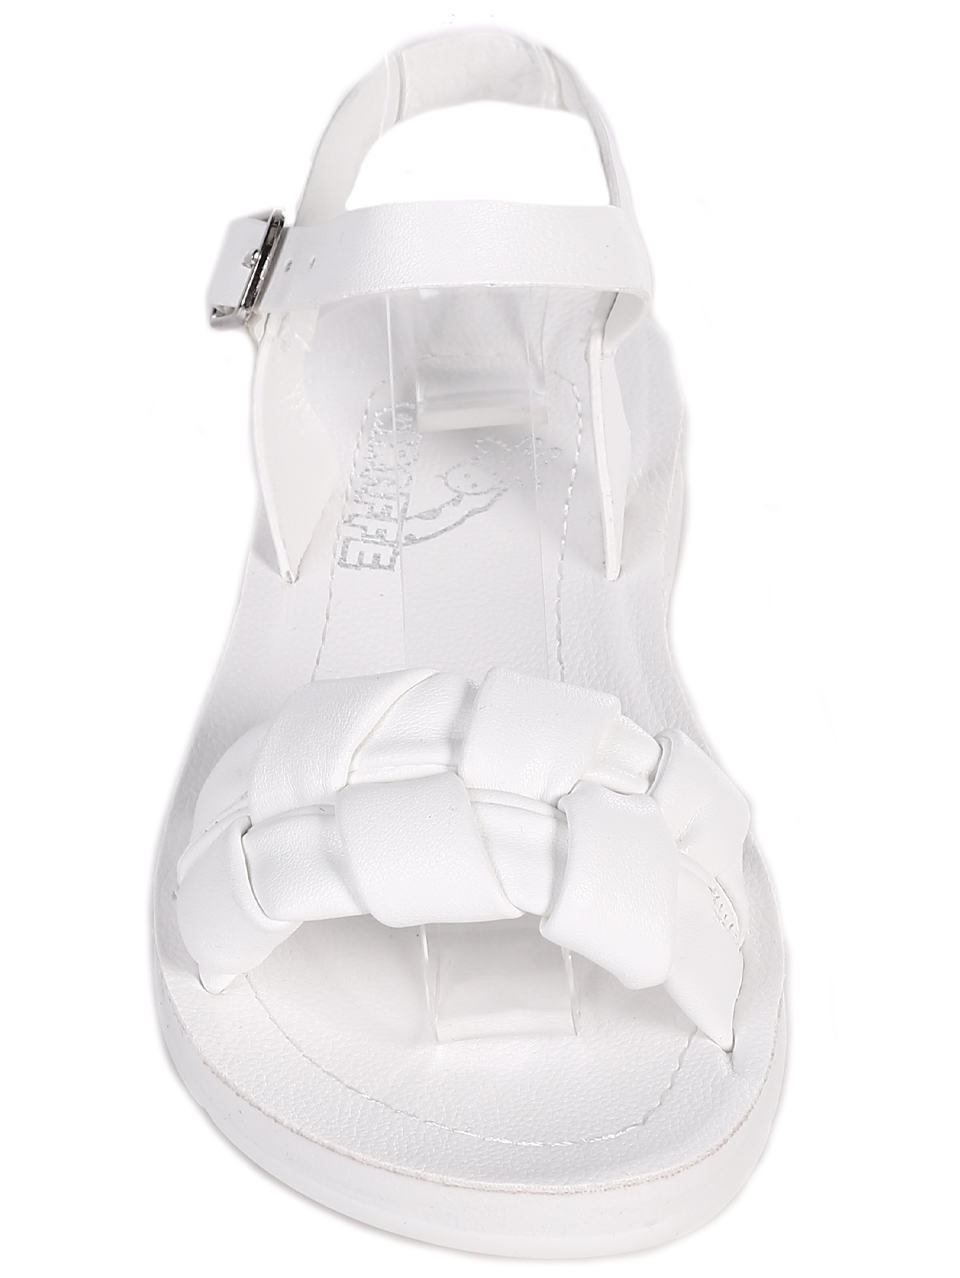 Ежедневни детски комфортни сандали в бяло 17F-23240 white